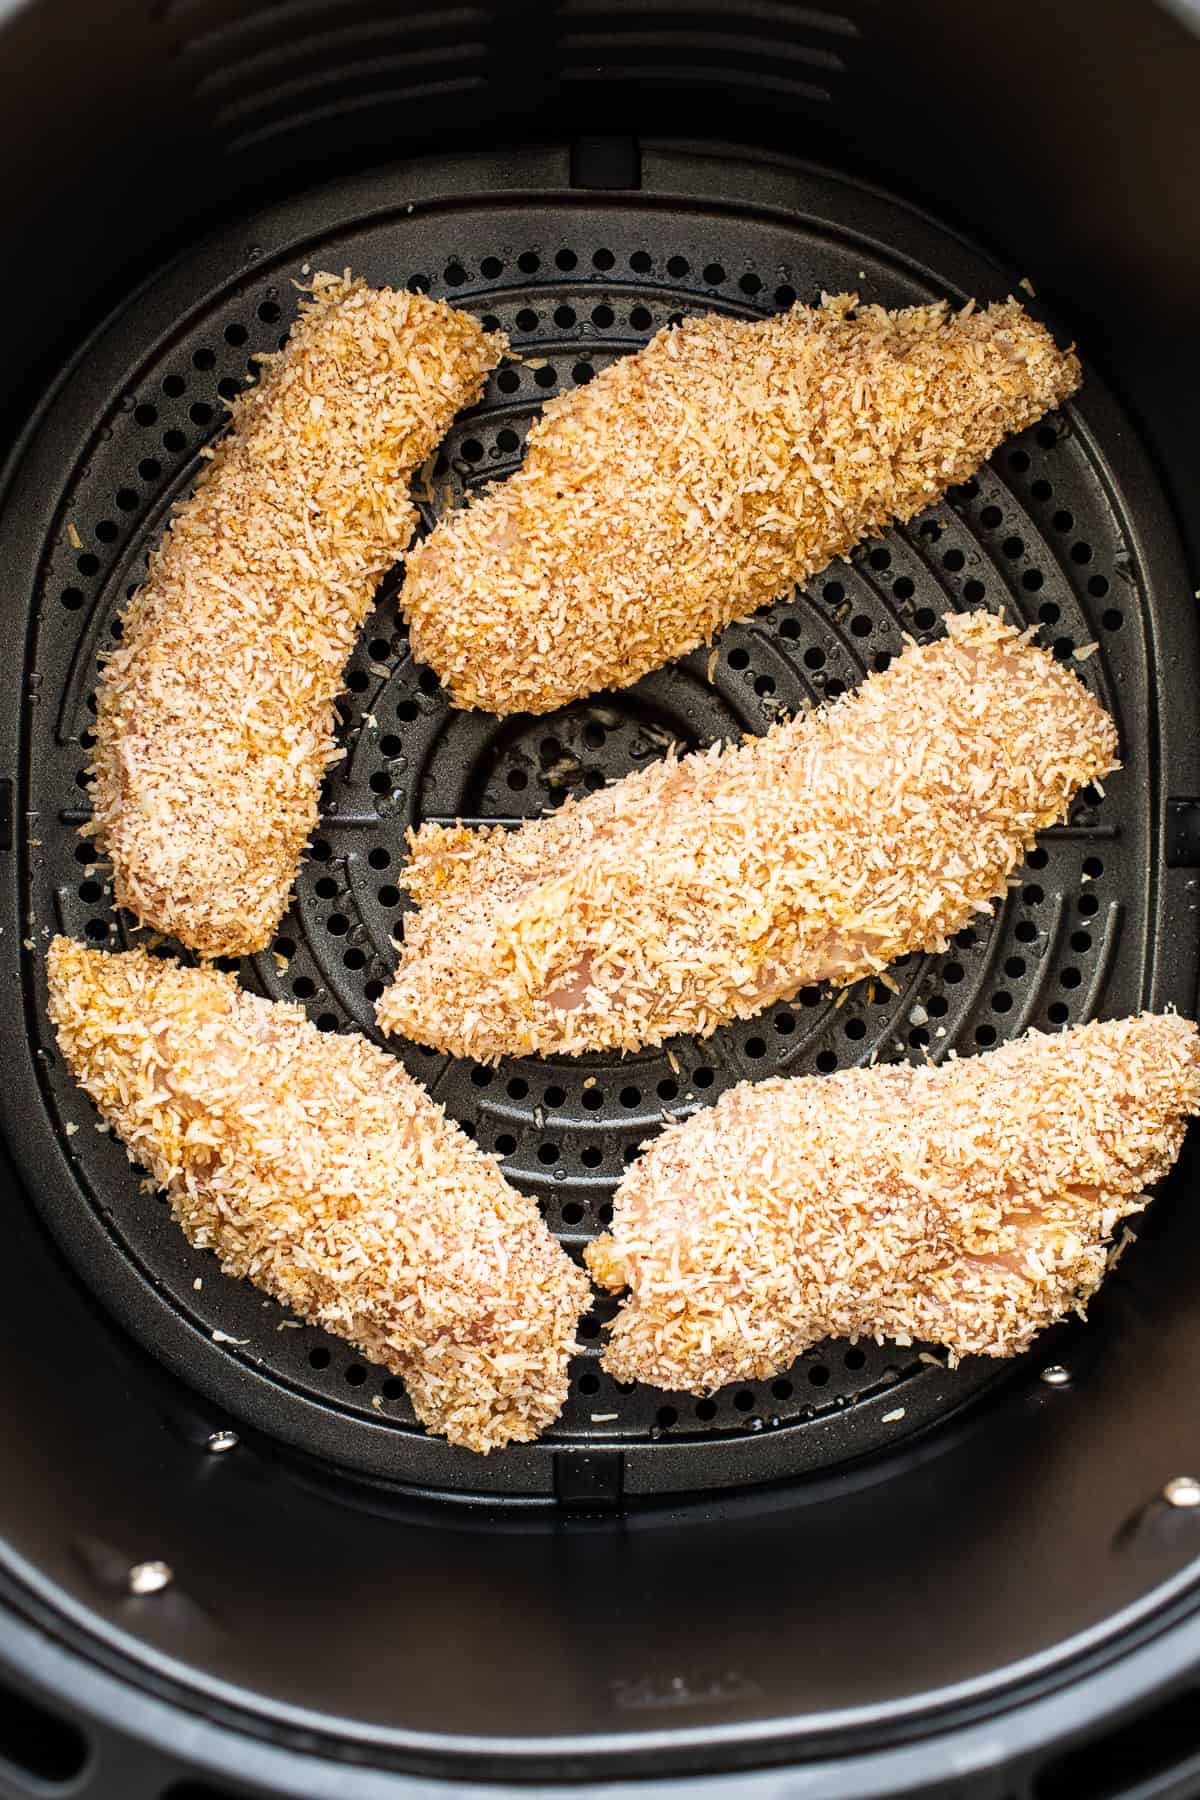 Chicken tenders in the air fryer.